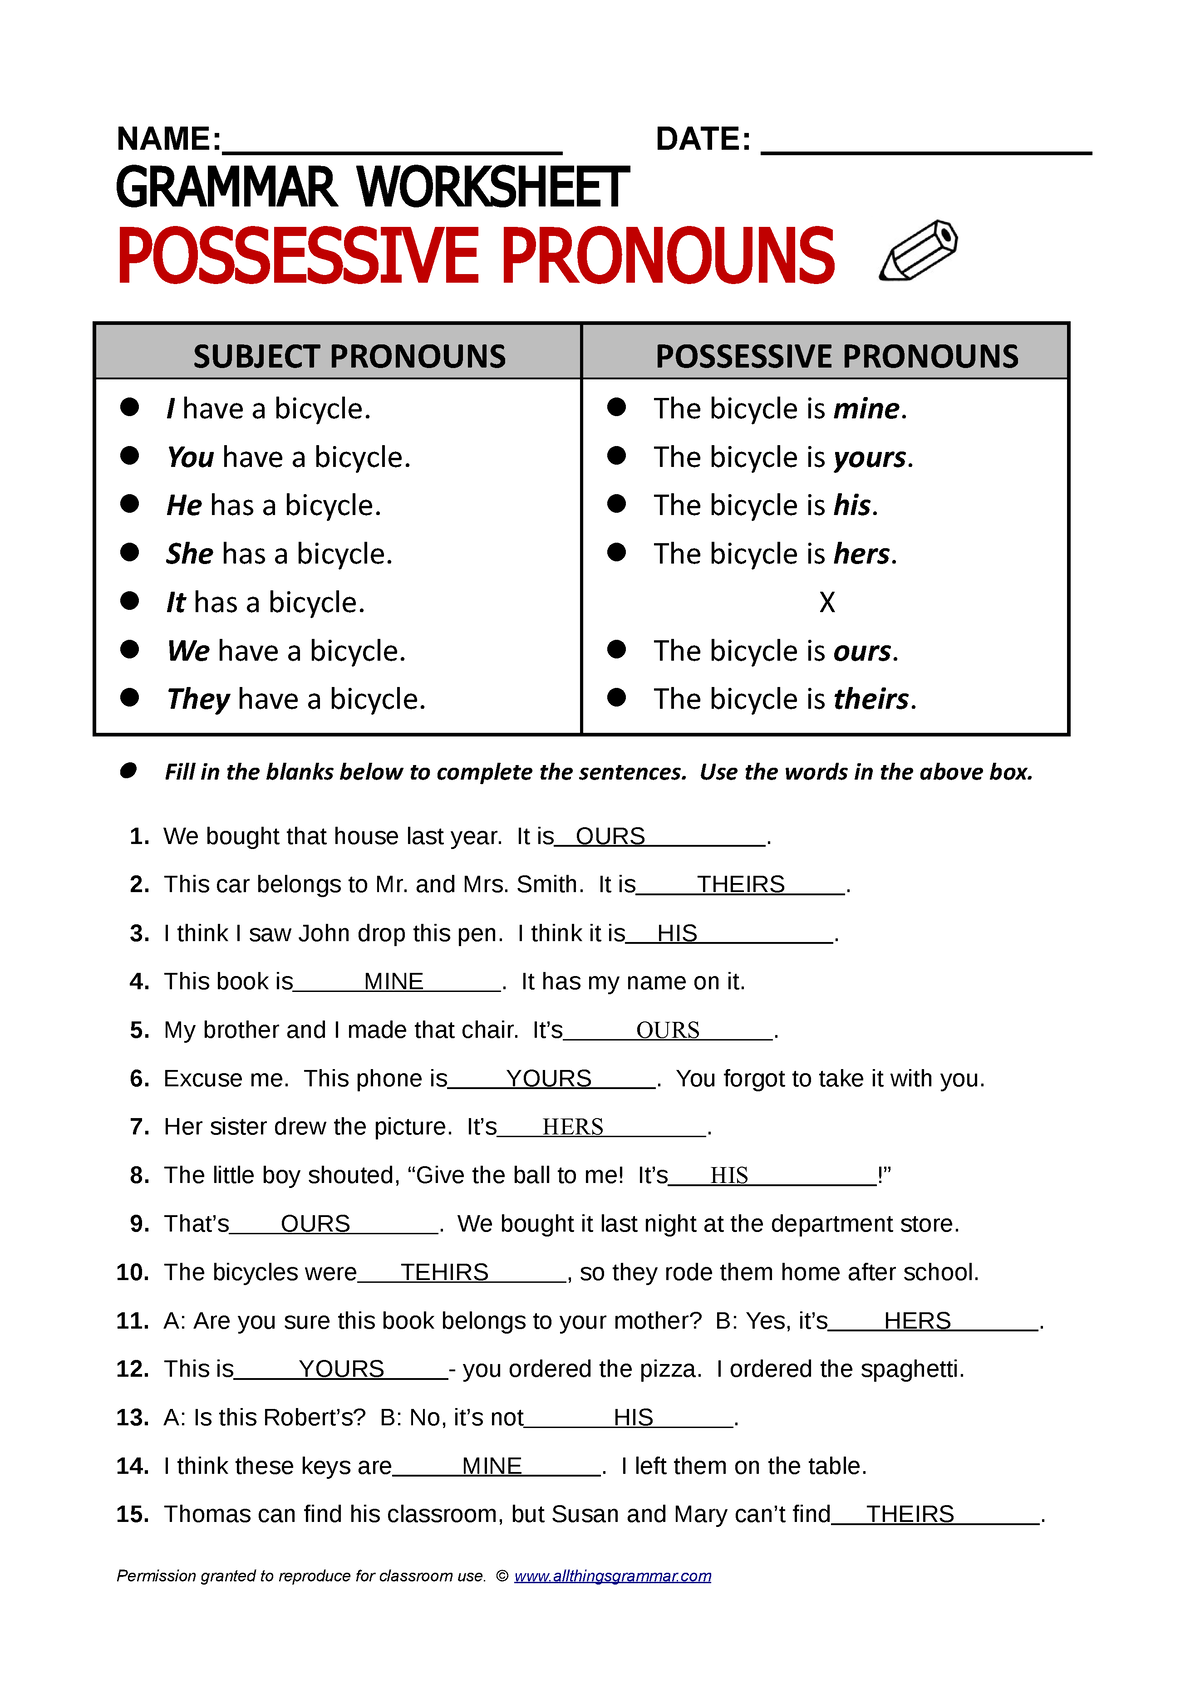 possesive-pronouns-ingles-ii-name-date-grammar-worksheet-possessive-pronouns-subject